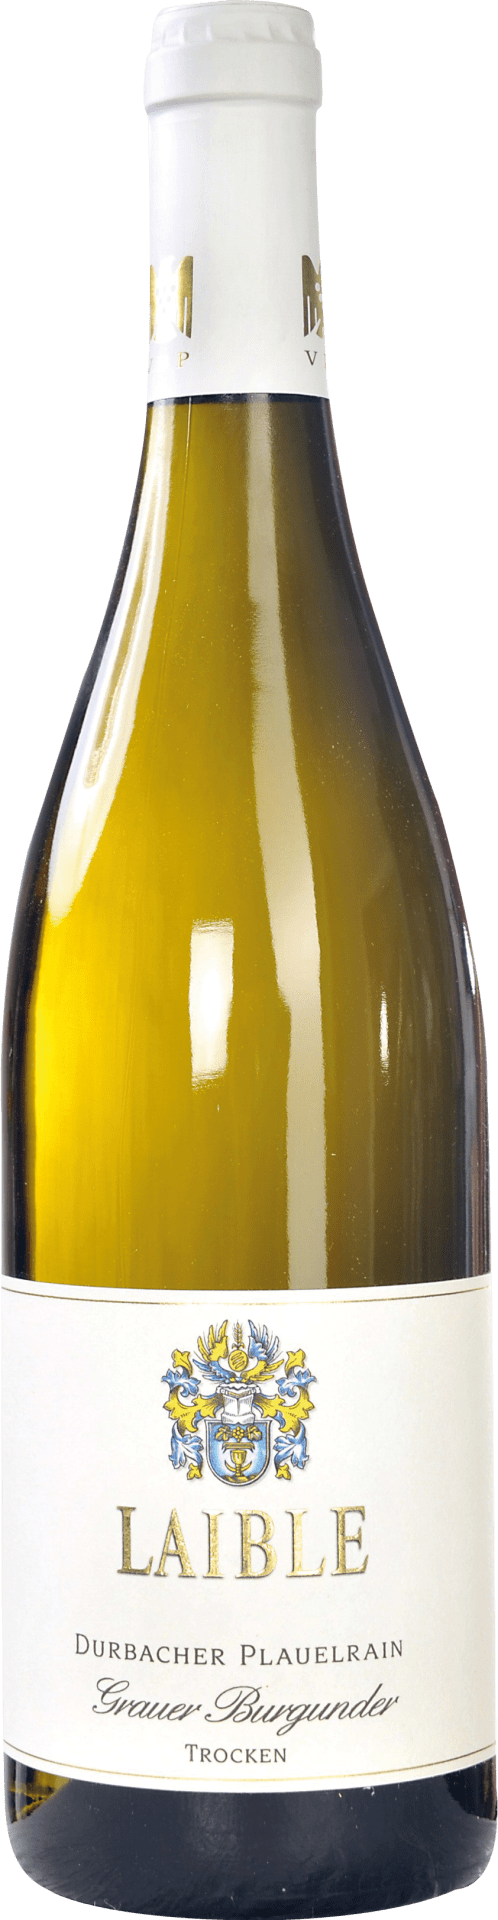 Durbacher Plauelrain Grauer Burgunder Qualitätswein trocken